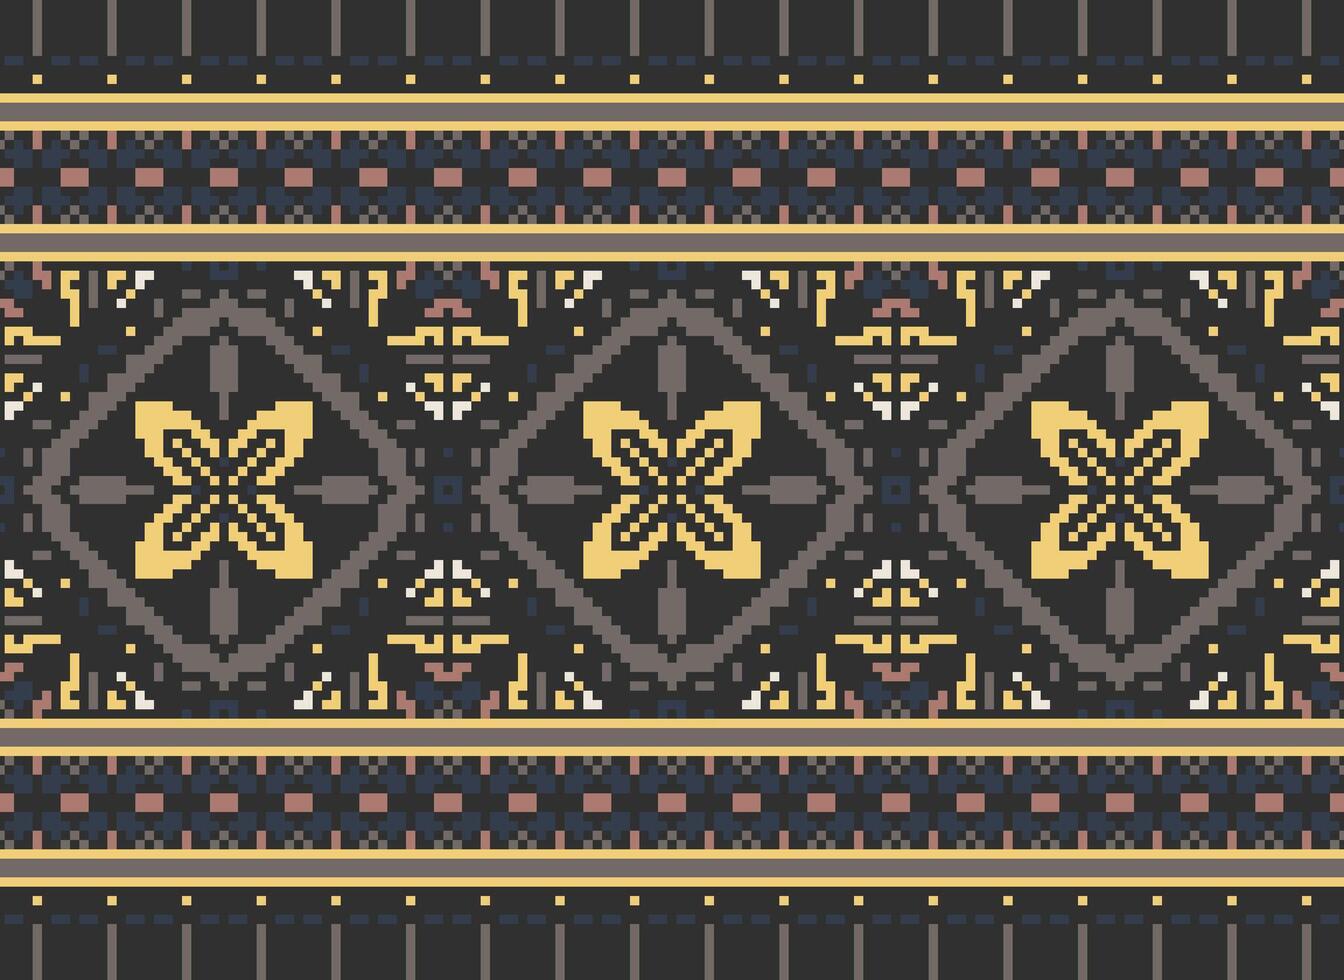 pixel jaargangen kruis steek traditioneel etnisch patroon paisley bloem ikat achtergrond abstract aztec Afrikaanse Indonesisch Indisch naadloos patroon voor kleding stof afdrukken kleding jurk tapijt gordijnen en sarong vector